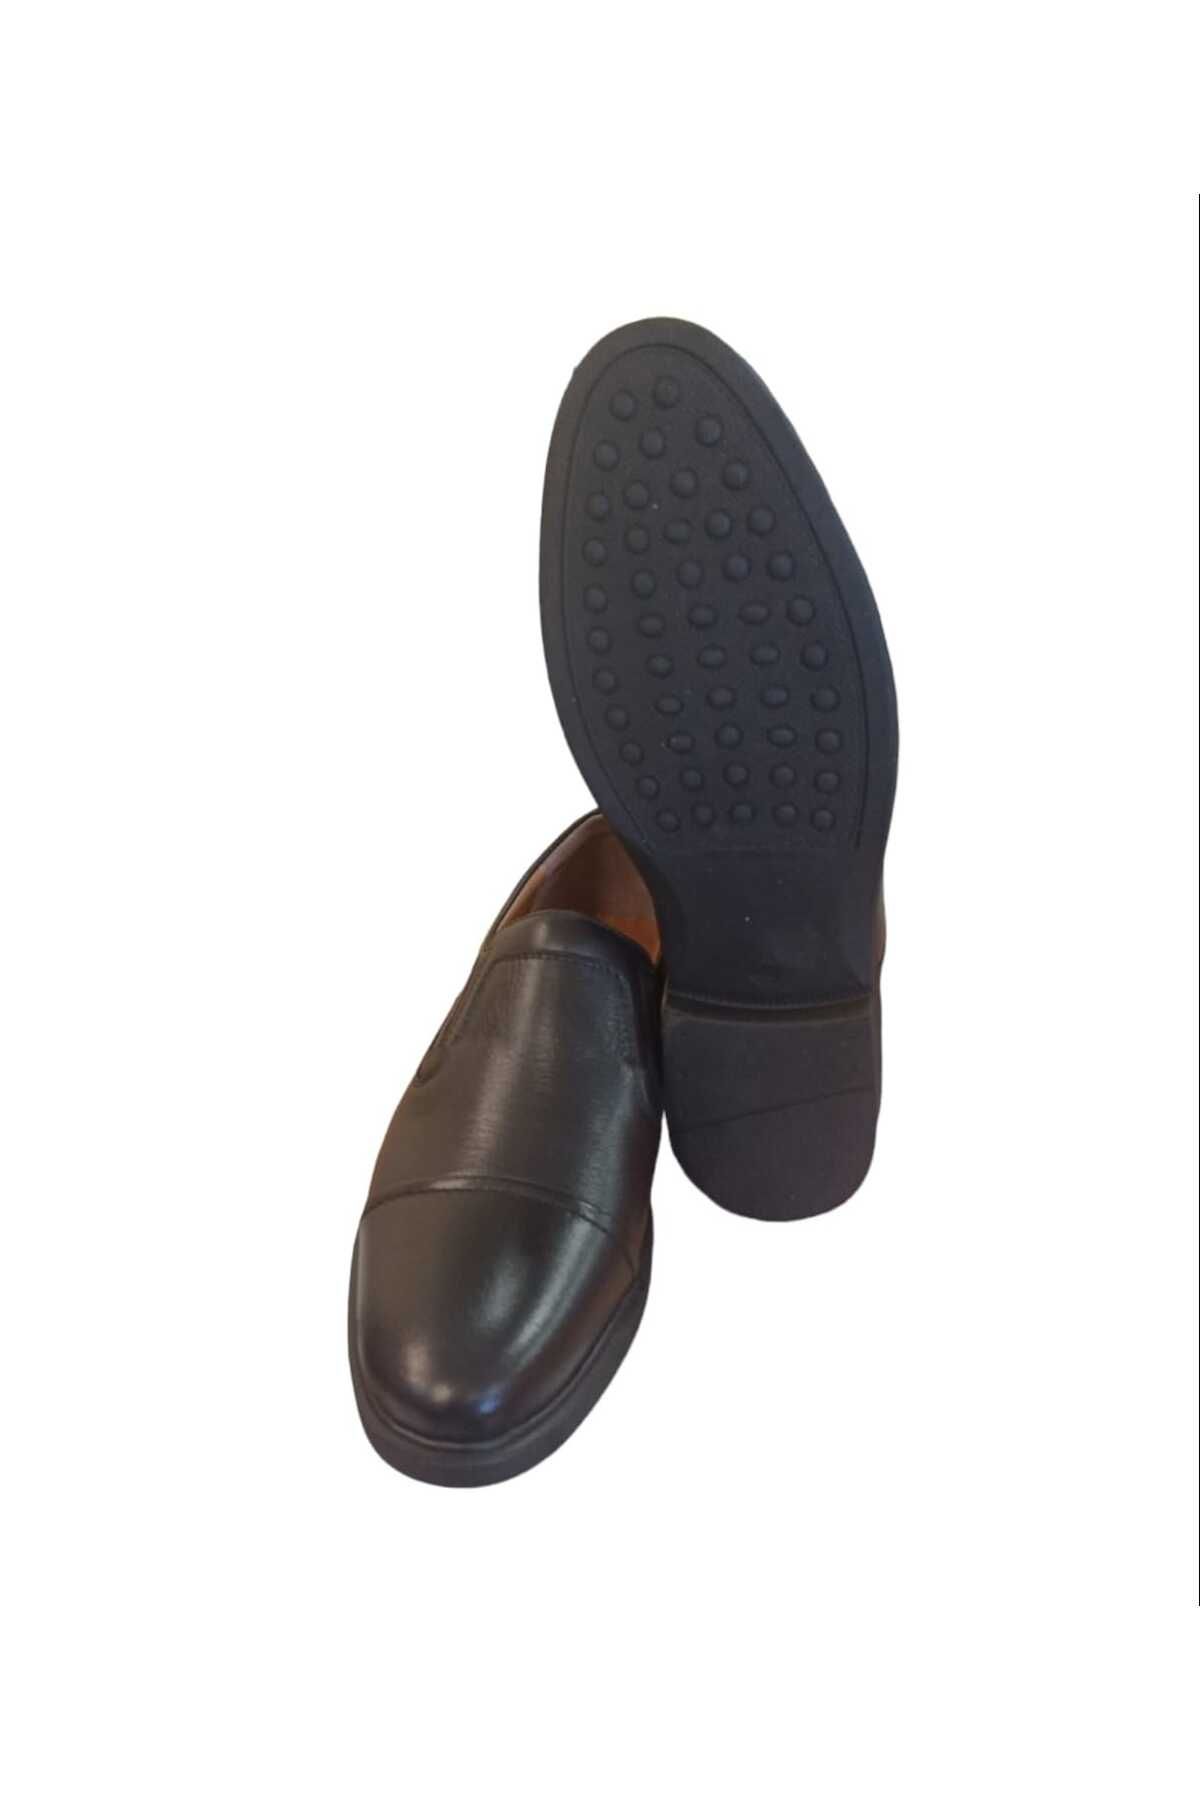 Bemsa Kauçuk 692 hakiki deri comfort ortopedik bemsa erkek ayakkabı siyah bağsız